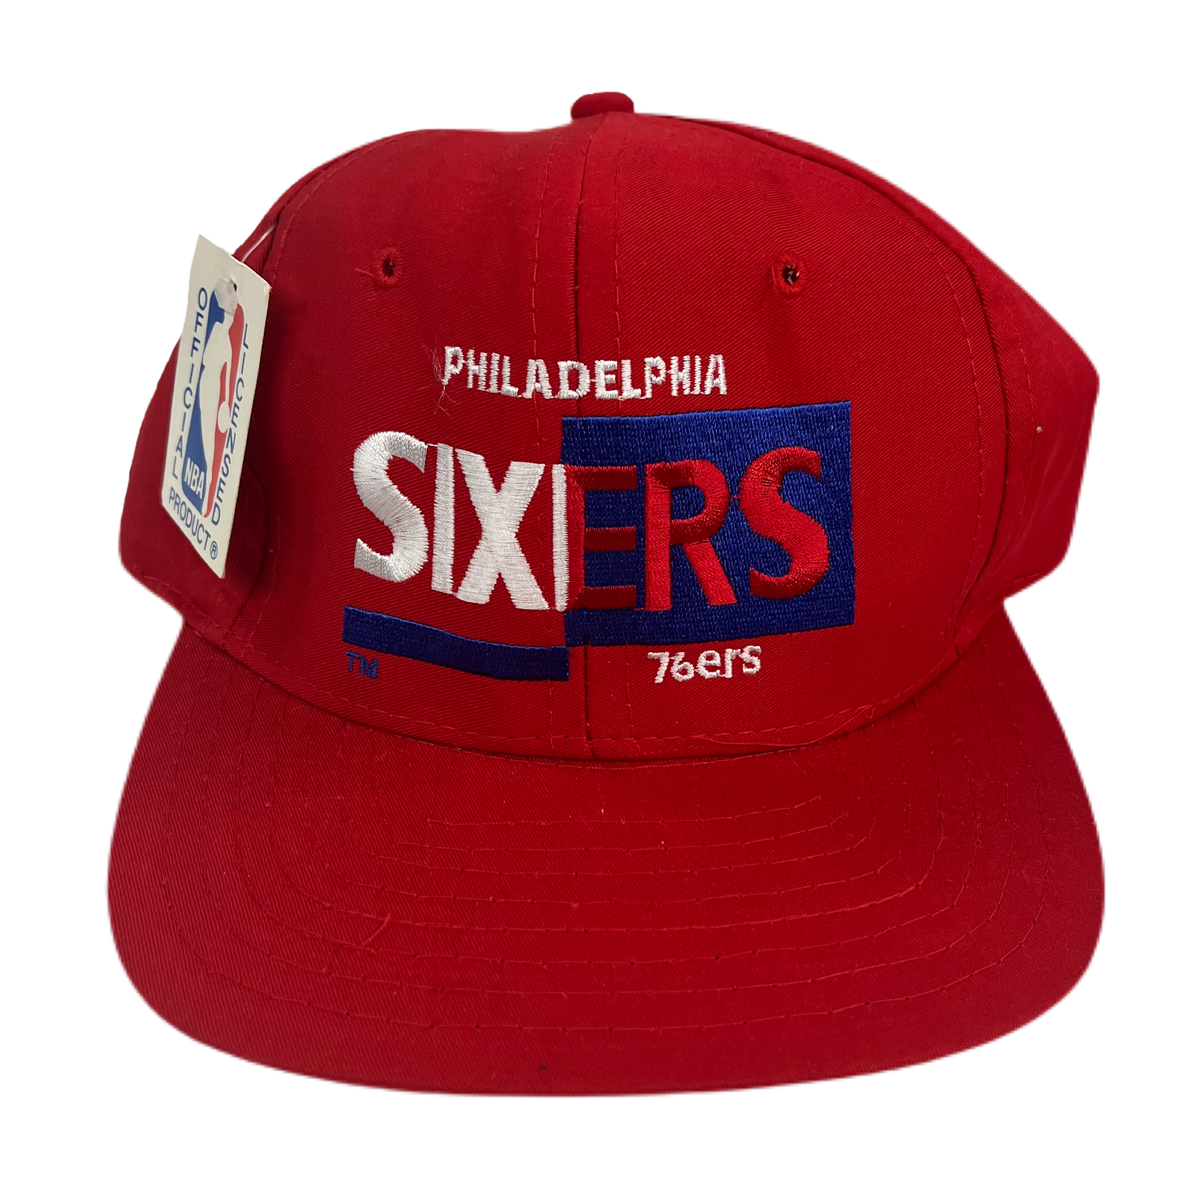 Vintage Philadelphia Sixers 76ers &quot;Signature&quot; Hat